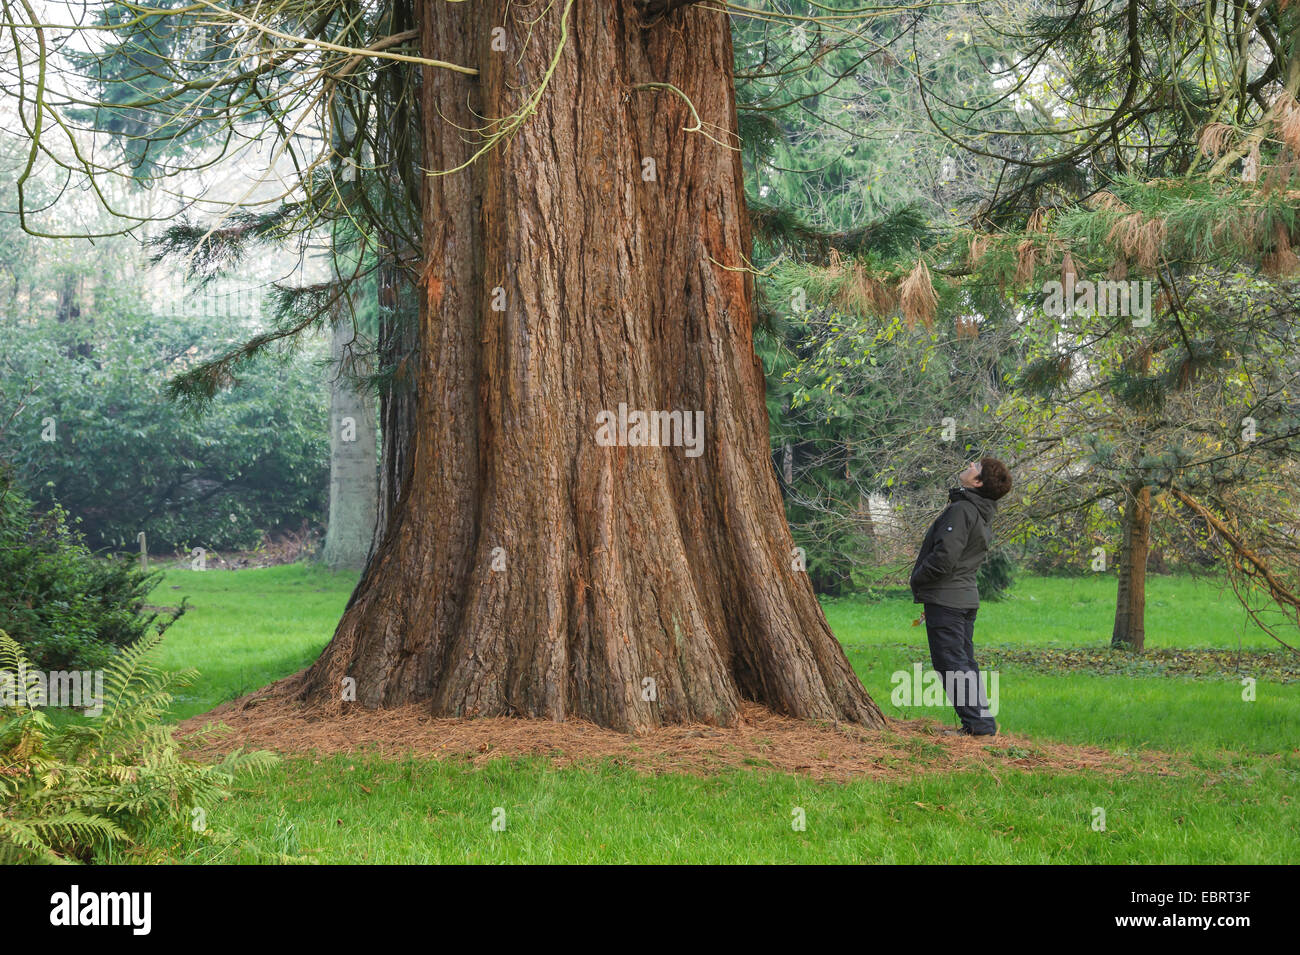 La secuoya gigante, La secuoya gigante (Sequoiadendron giganteum), mujer mirando hacia arriba el tronco de un árbol, en Alemania, en el Estado federado de Mecklemburgo-Pomerania Occidental Foto de stock